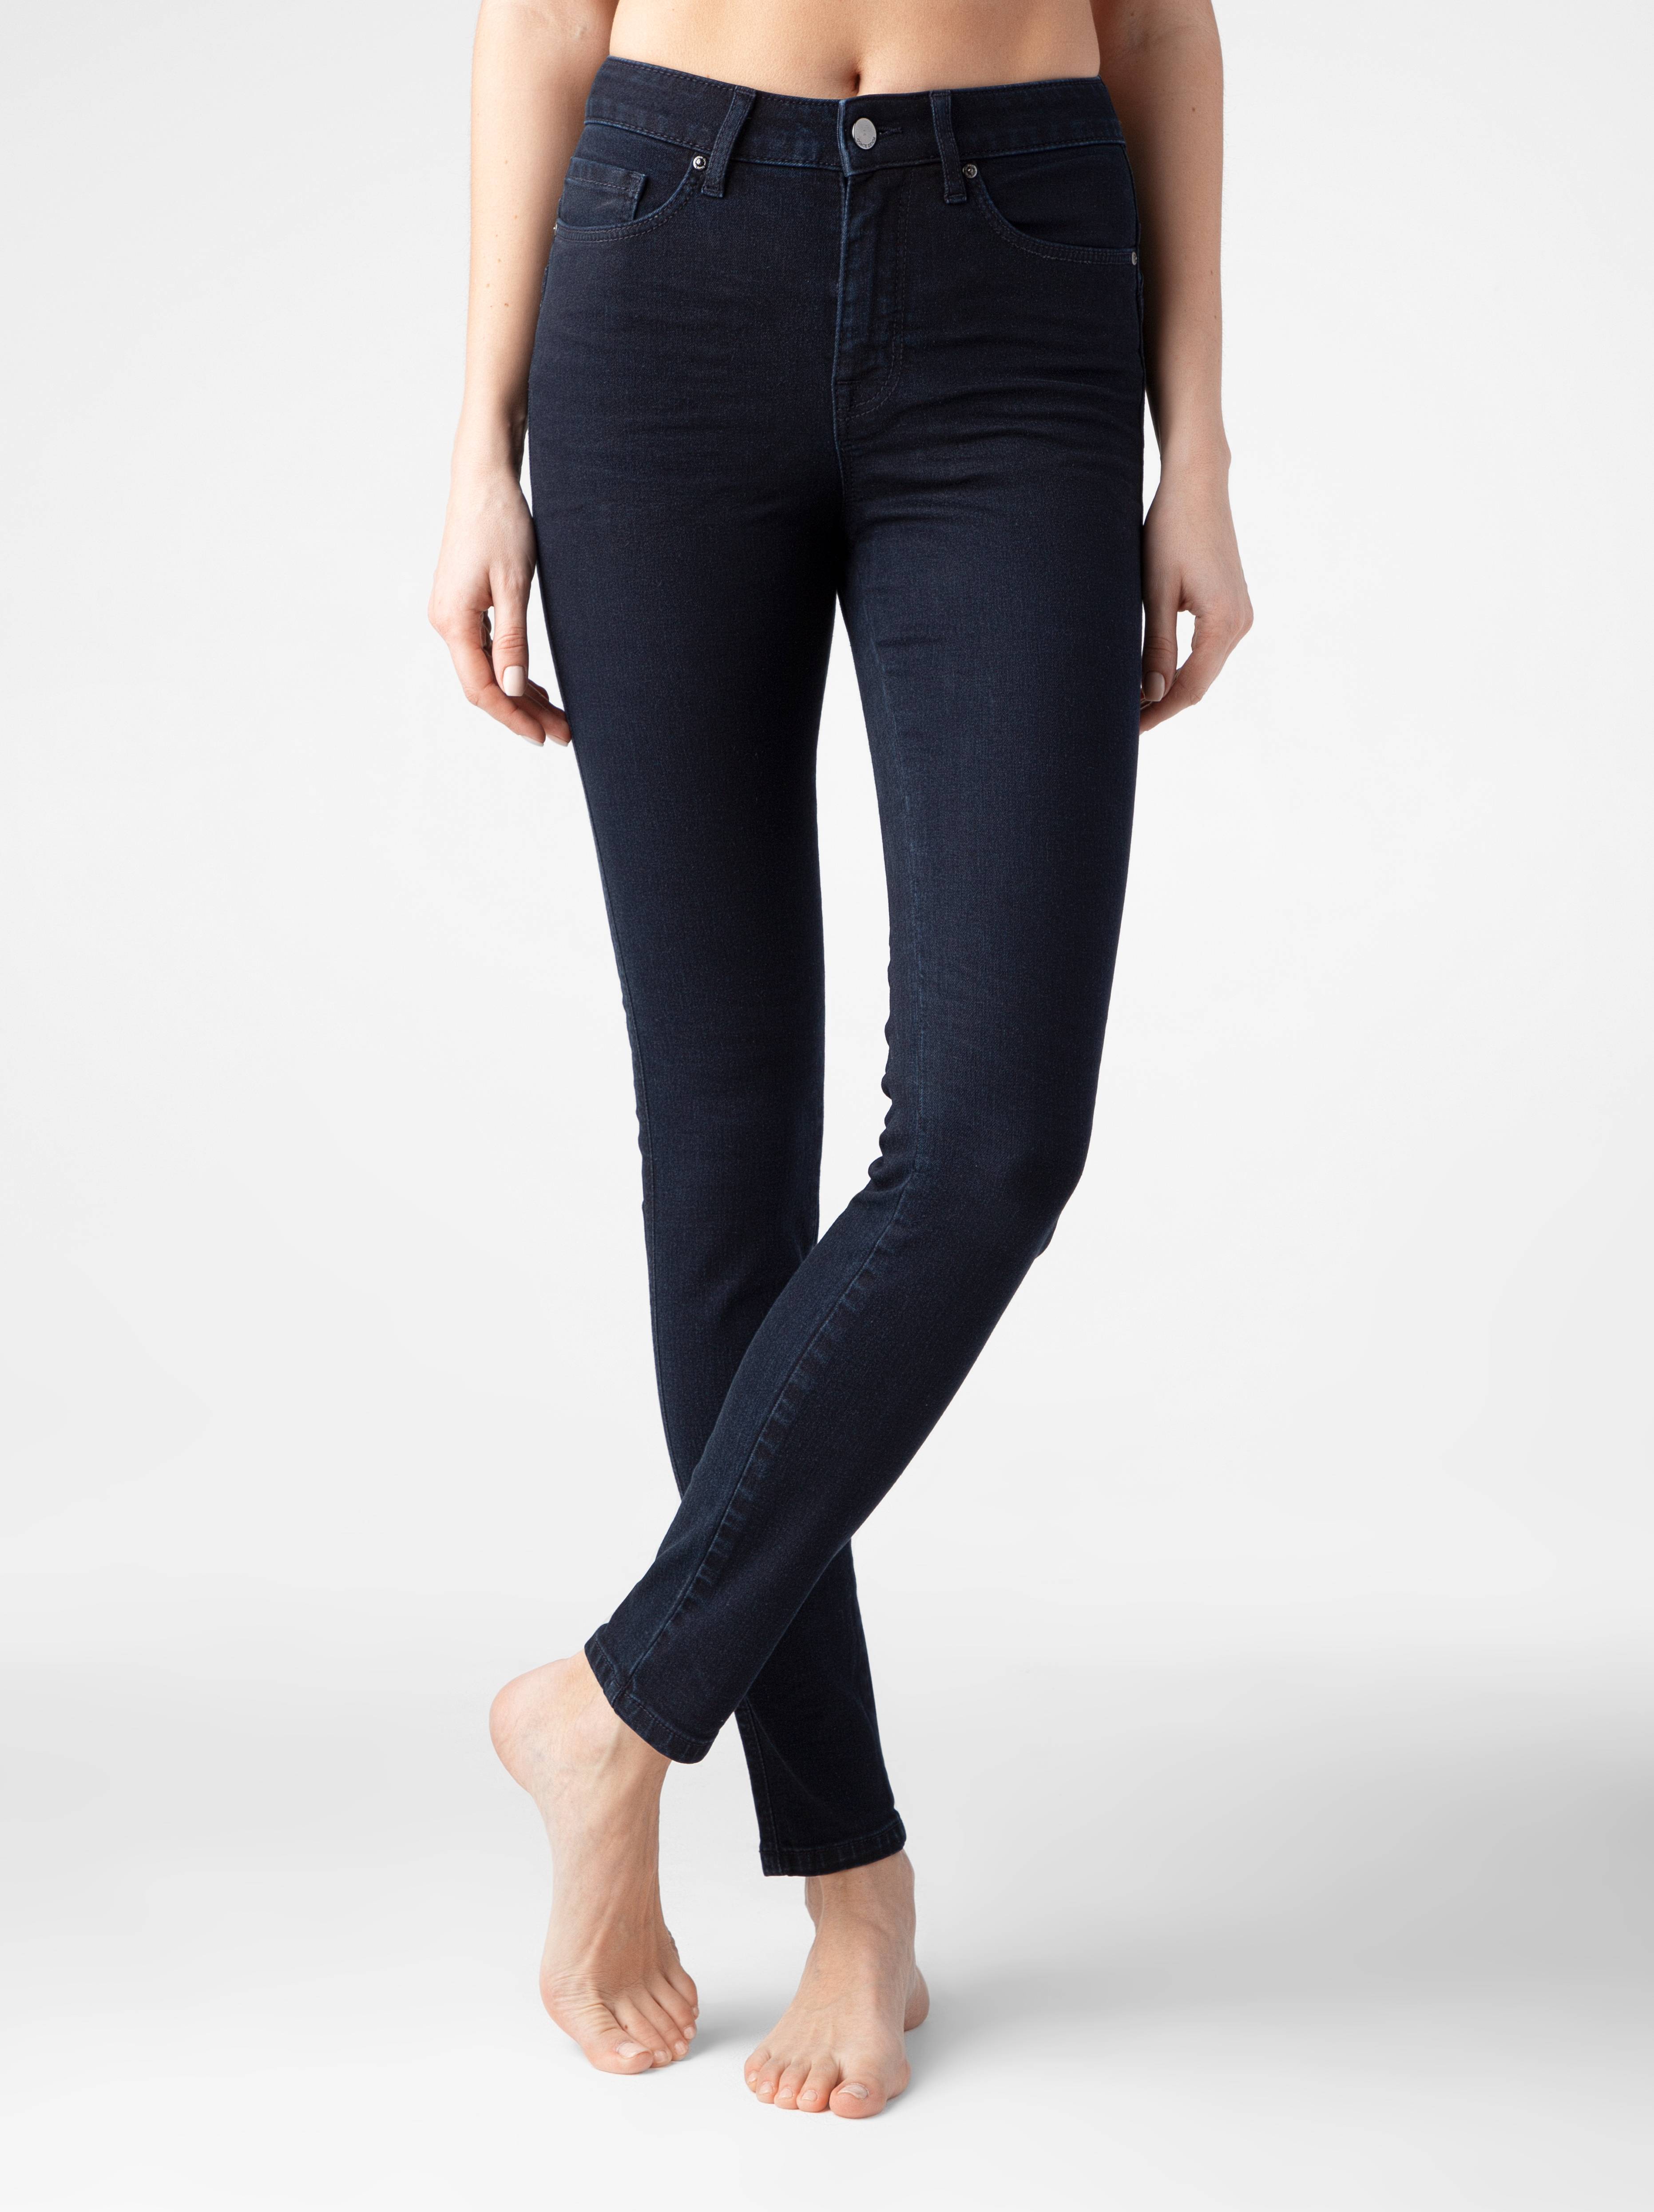 Моделирующие джинсы skinny с высокой посадкой CON-270 Conte ⭐️, цвет dark indigo, размер 164-110 - фото 1